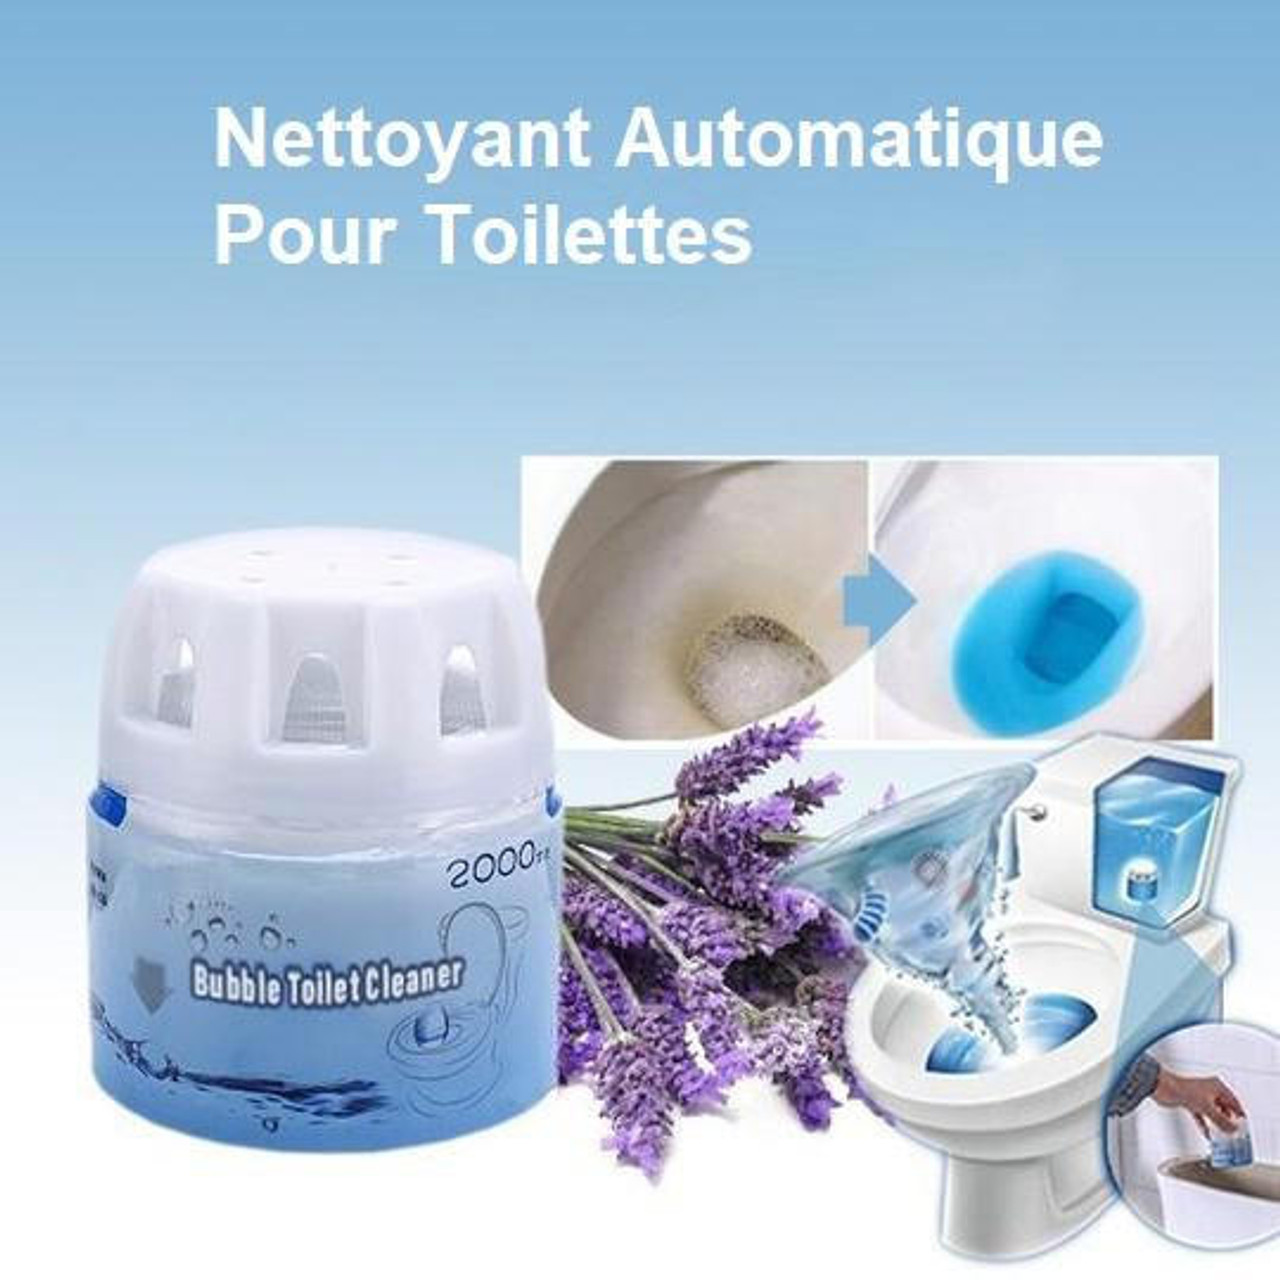 Nettoyant Automatique Pour Toilettes